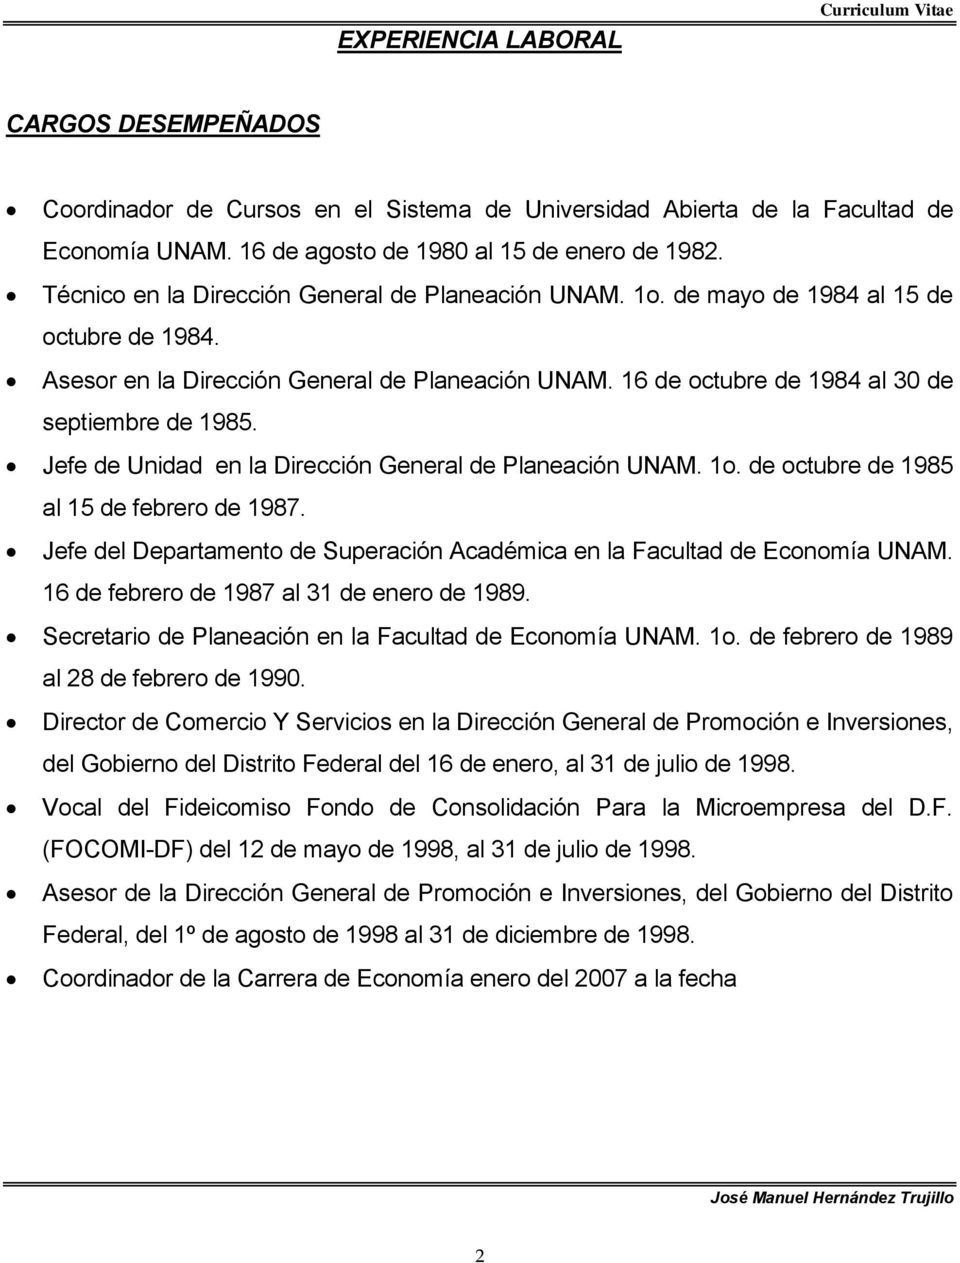 Jefe de Unidad en la Dirección General de Planeación UNAM. 1o. de octubre de 1985 al 15 de febrero de 1987. Jefe del Departamento de Superación Académica en la Facultad de Economía UNAM.